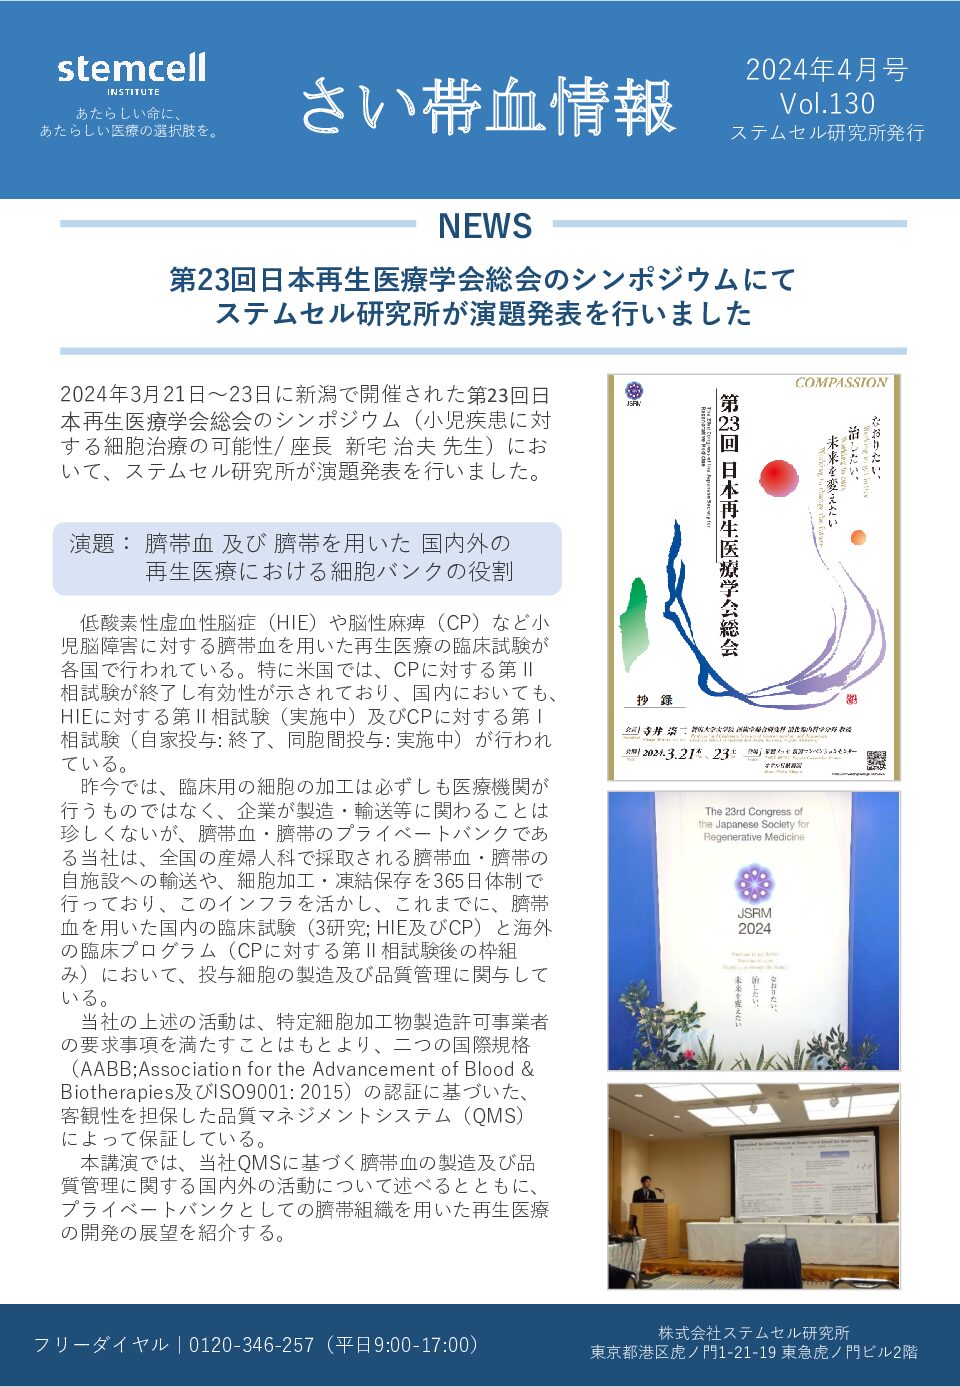 さい帯血情報Vol.130　第23回日本再生医療学会総会のシンポジウムにて ステムセル研究所が演題発表を行いました